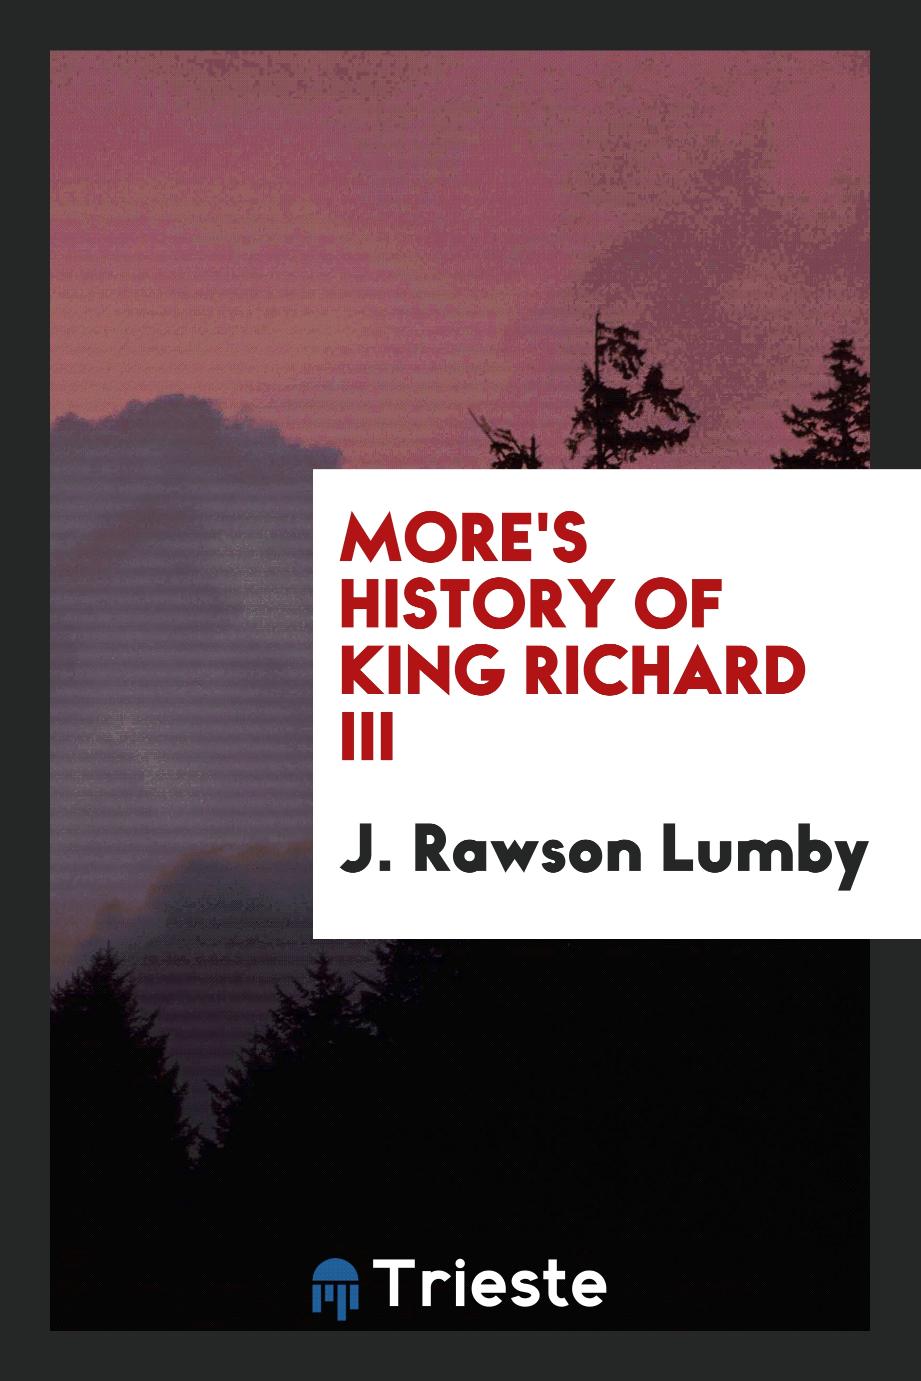 More's history of King Richard III